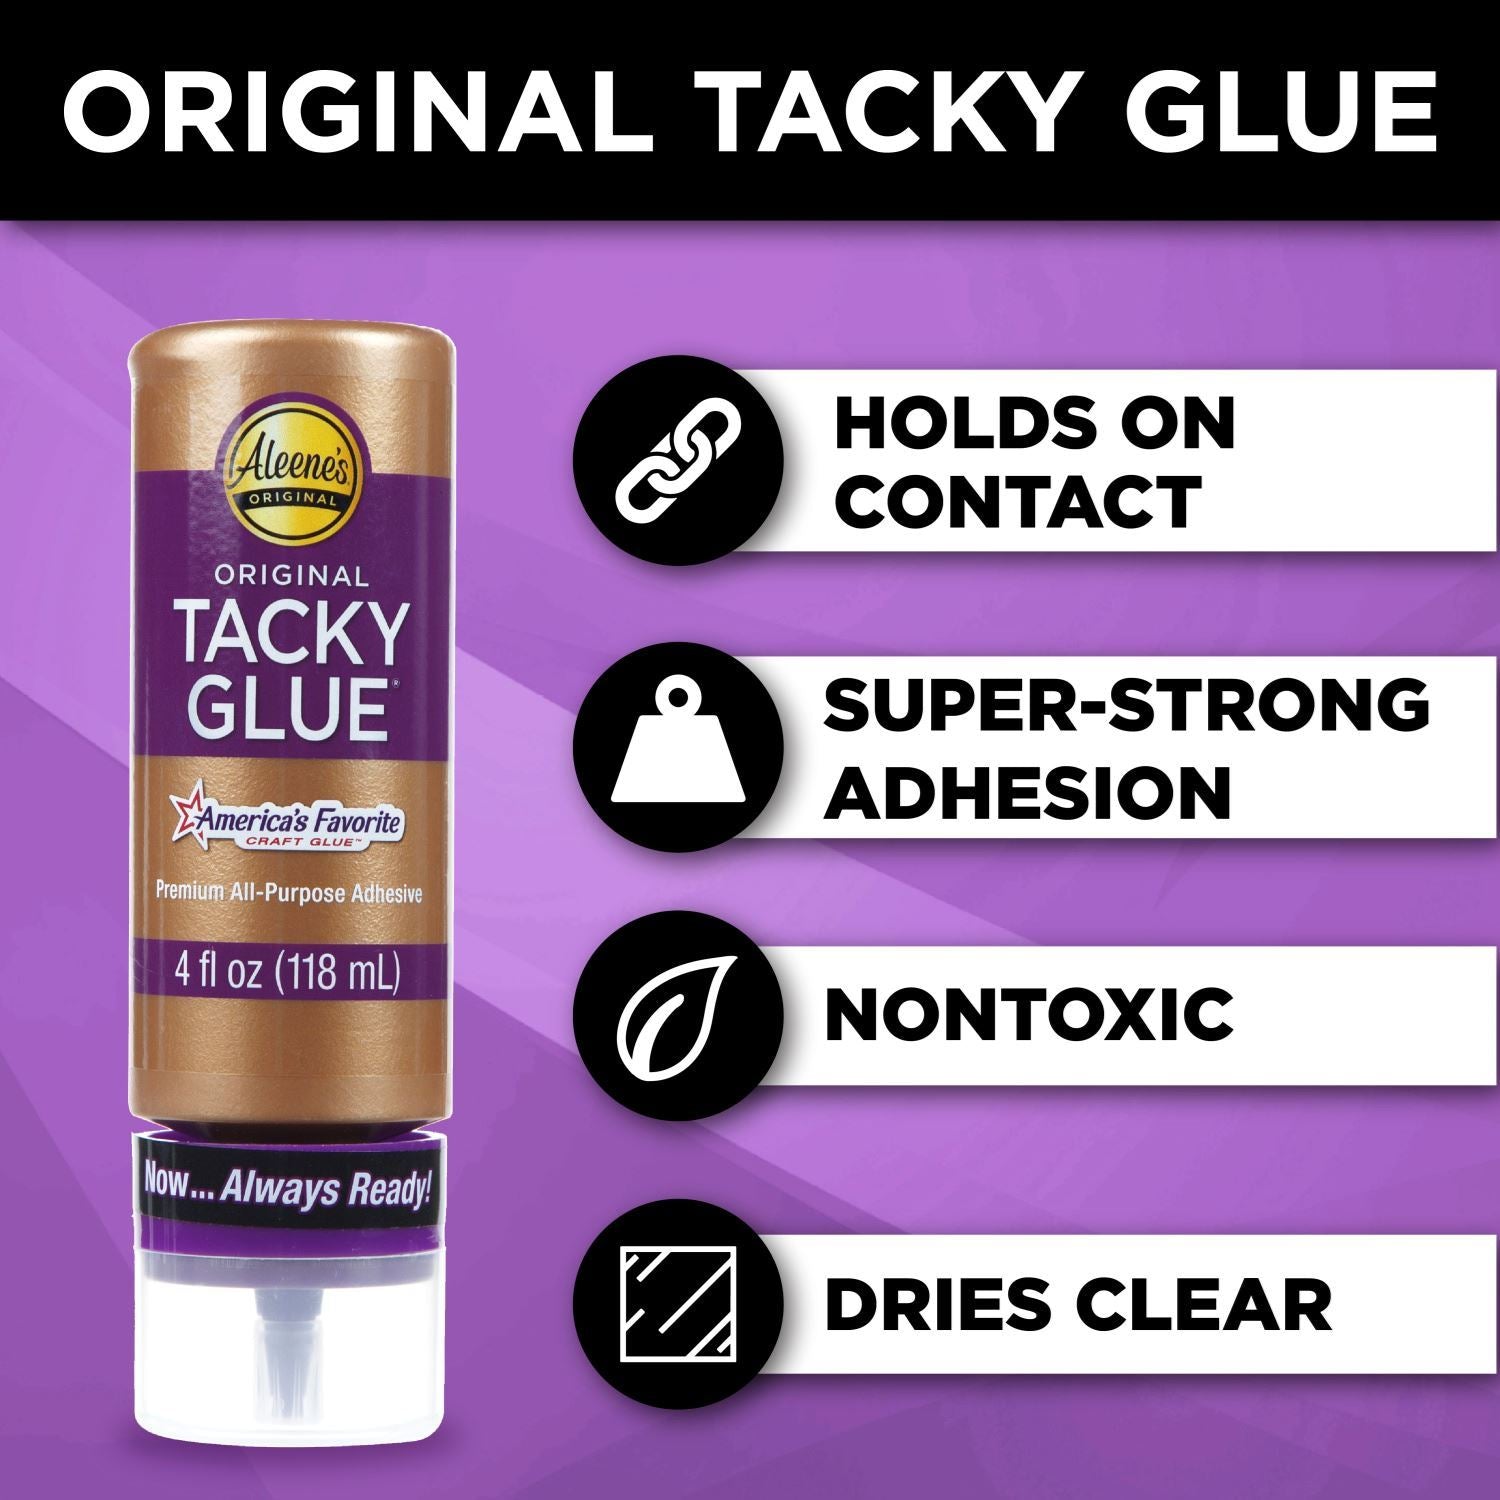 Original Tacky Glue